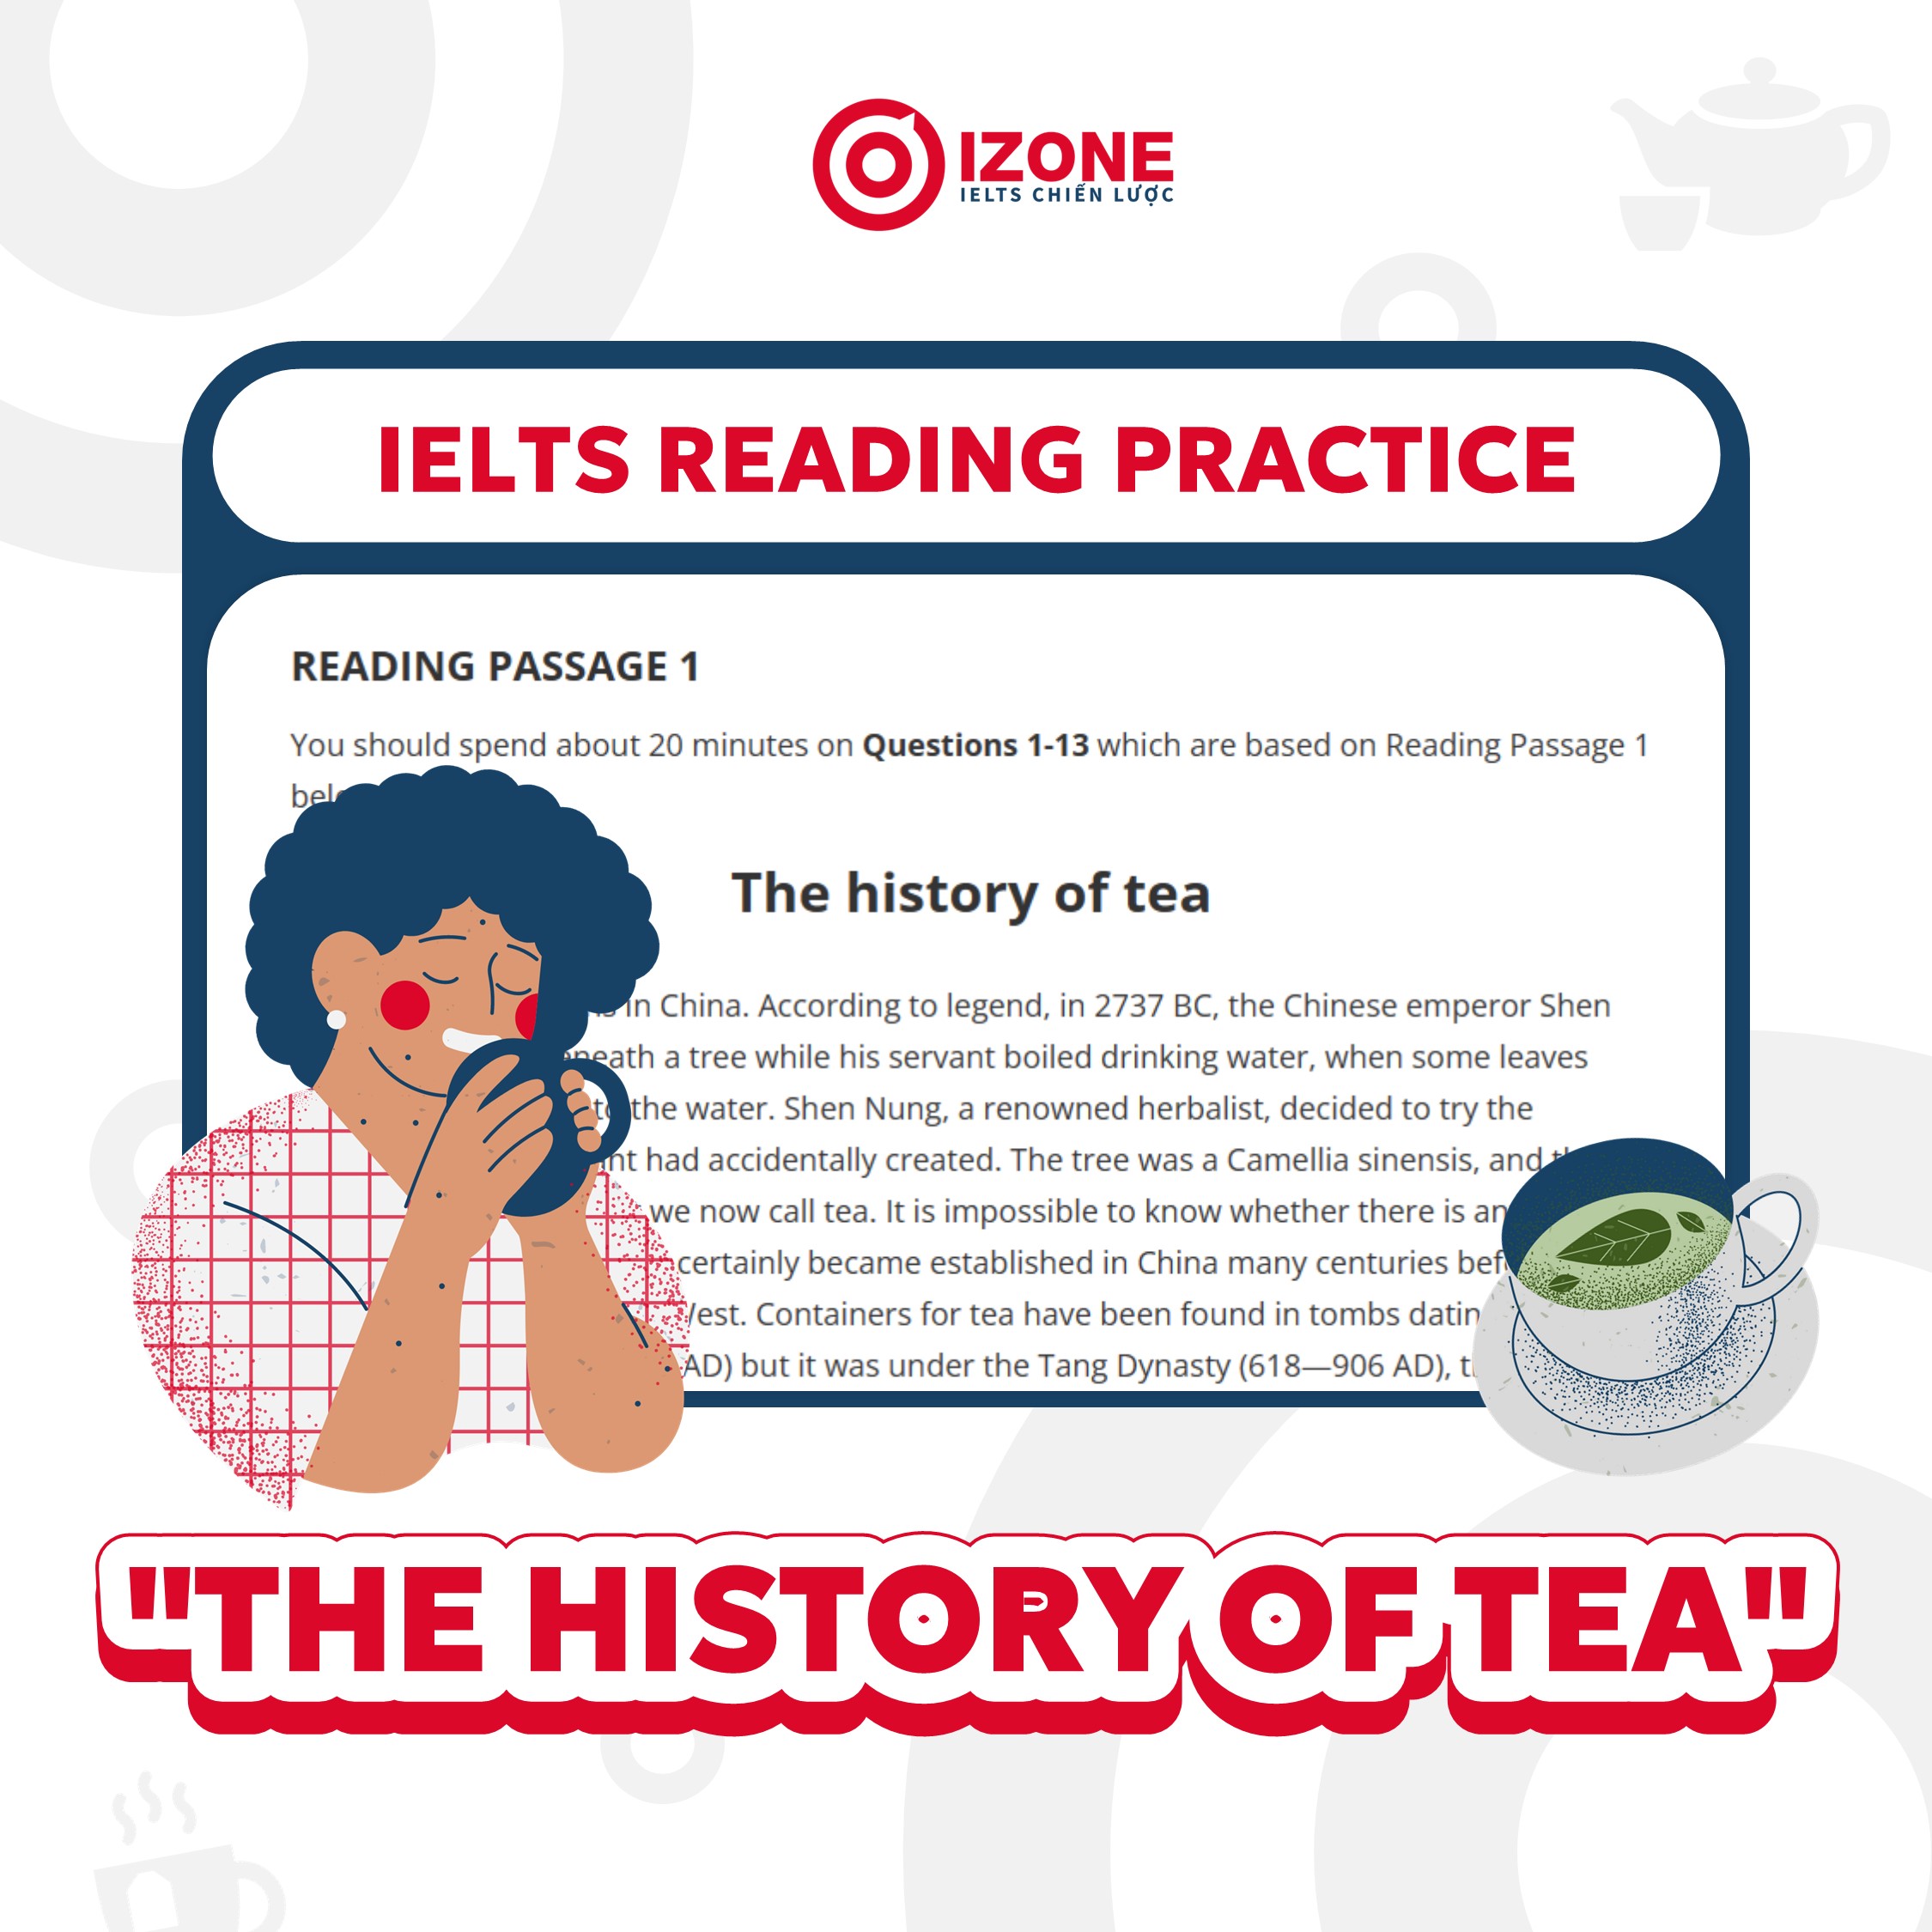 IELTS Reading practice: “The history of tea” – Dịch nghĩa và giải thích chi tiết